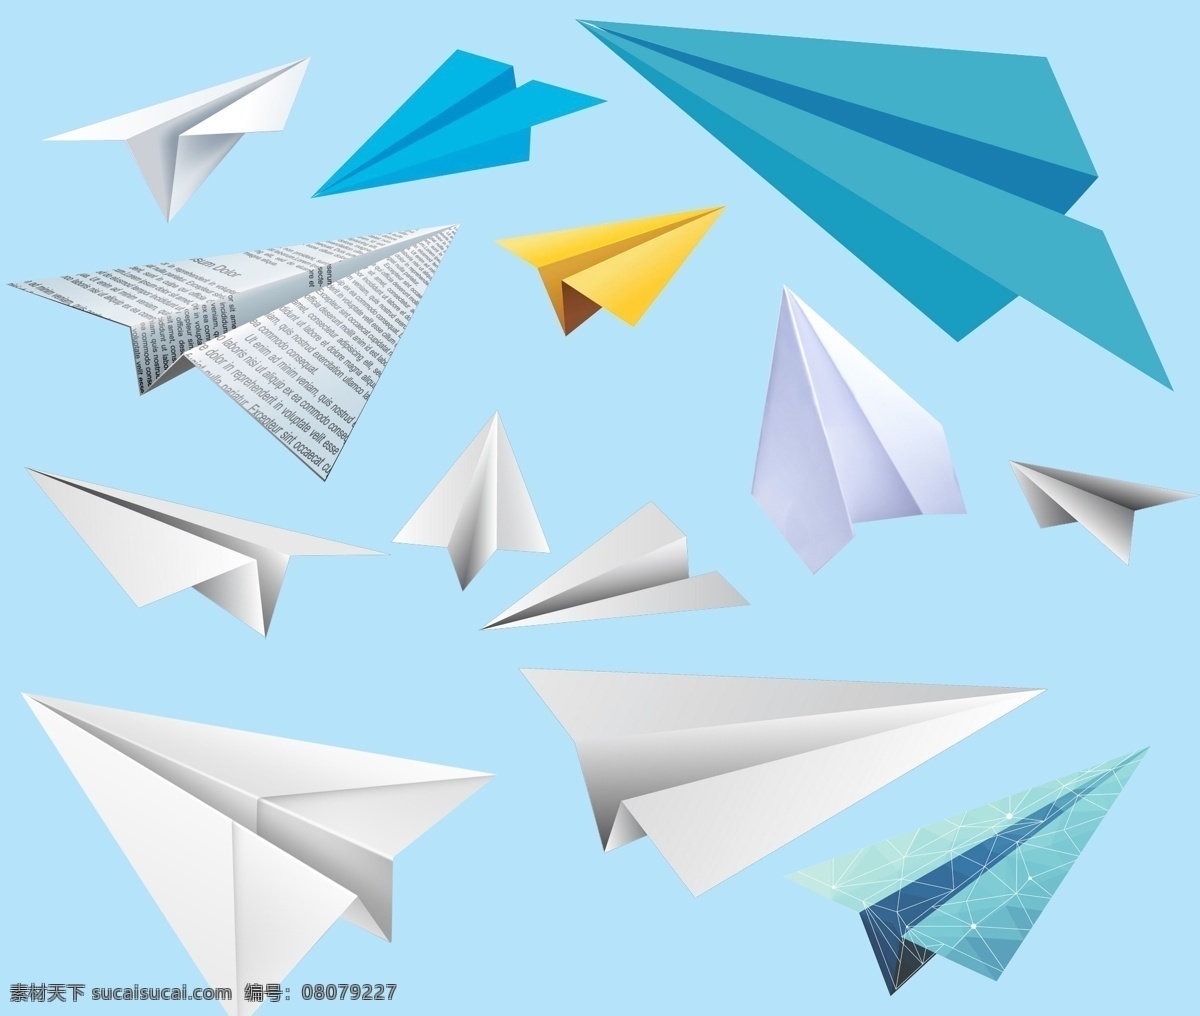 纸飞机图片 纸飞机 纸飞机素材 折纸 折纸素材